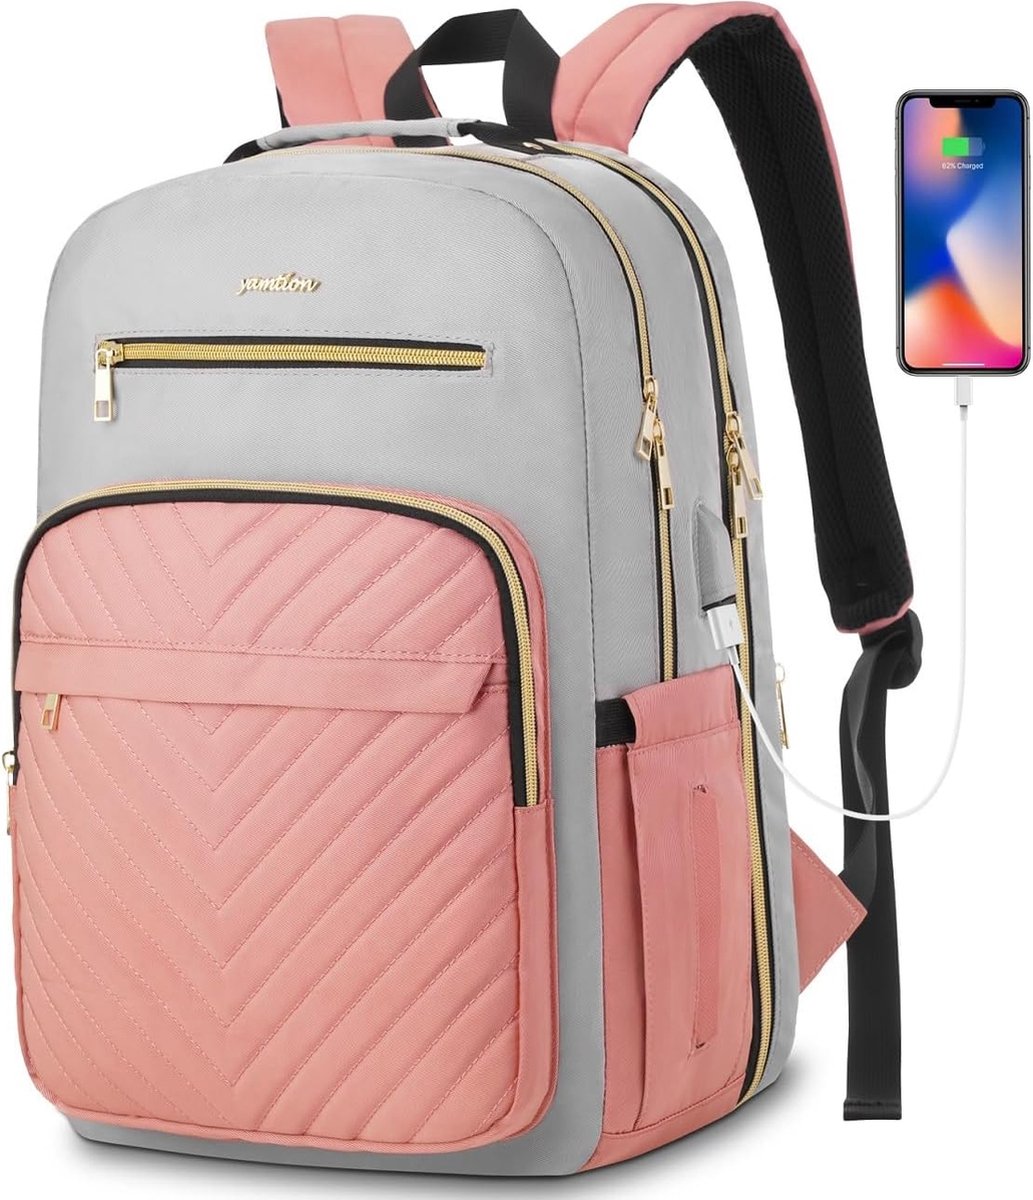 Laptoptas 17.3 inch - Grijs/roze - USB-oplaadpoort - 47 x 33 x 15 cm - Rugzak voor kantoor, school, werk, reizen - 35 L - Veel opbergruimte